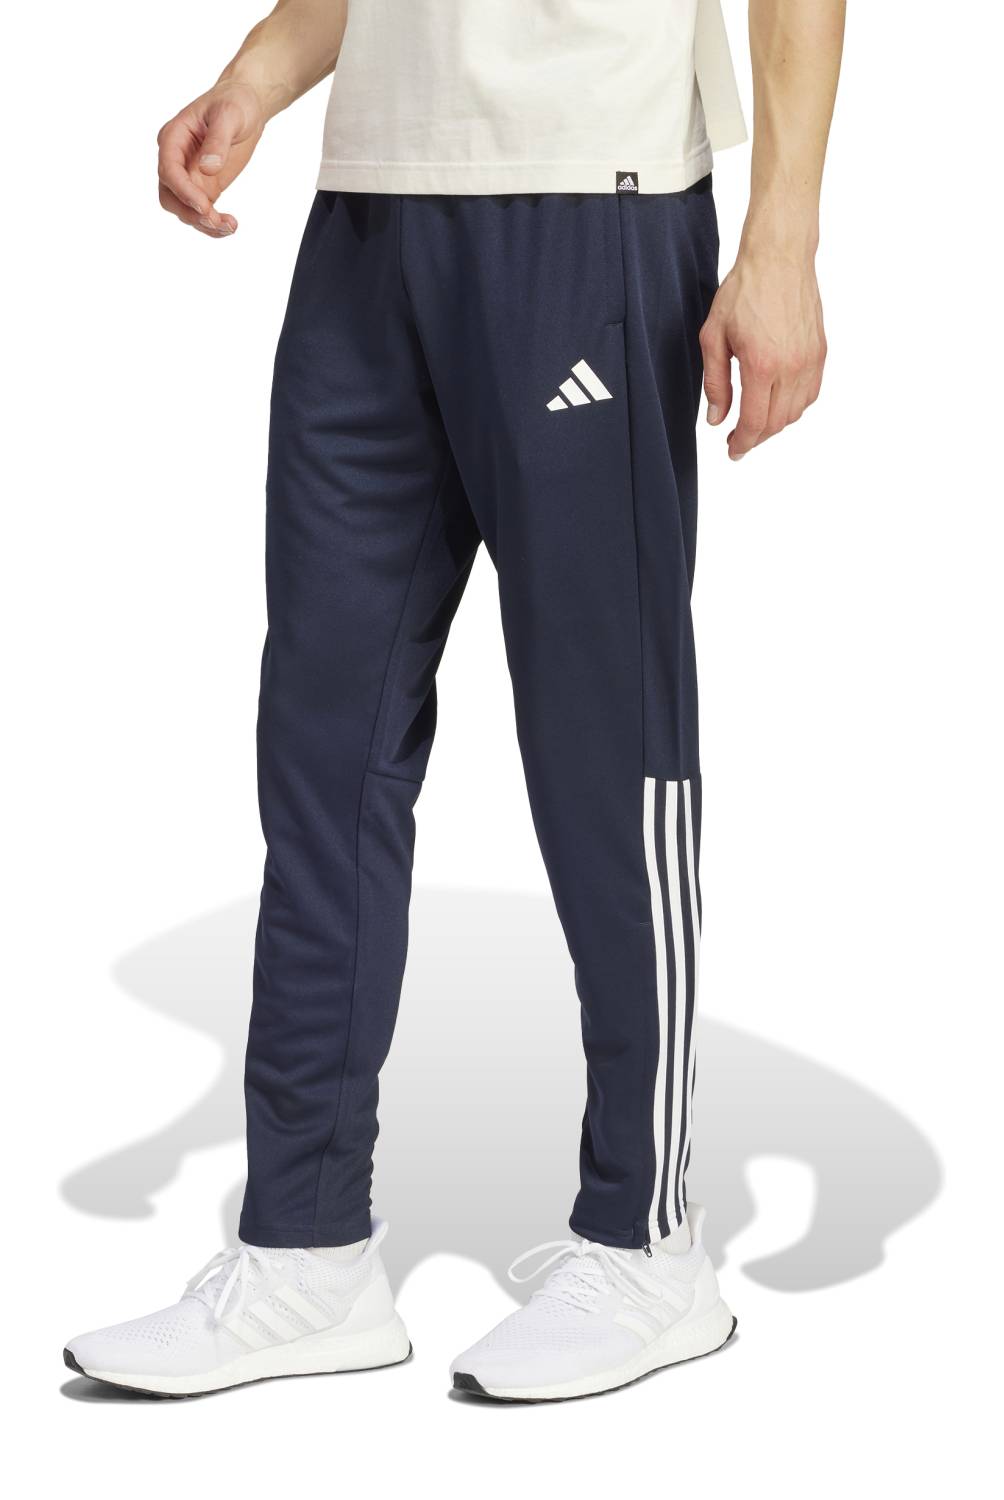 ADIDAS - Pantalón de Buzo Deportivo Sereno Hombre Adidas